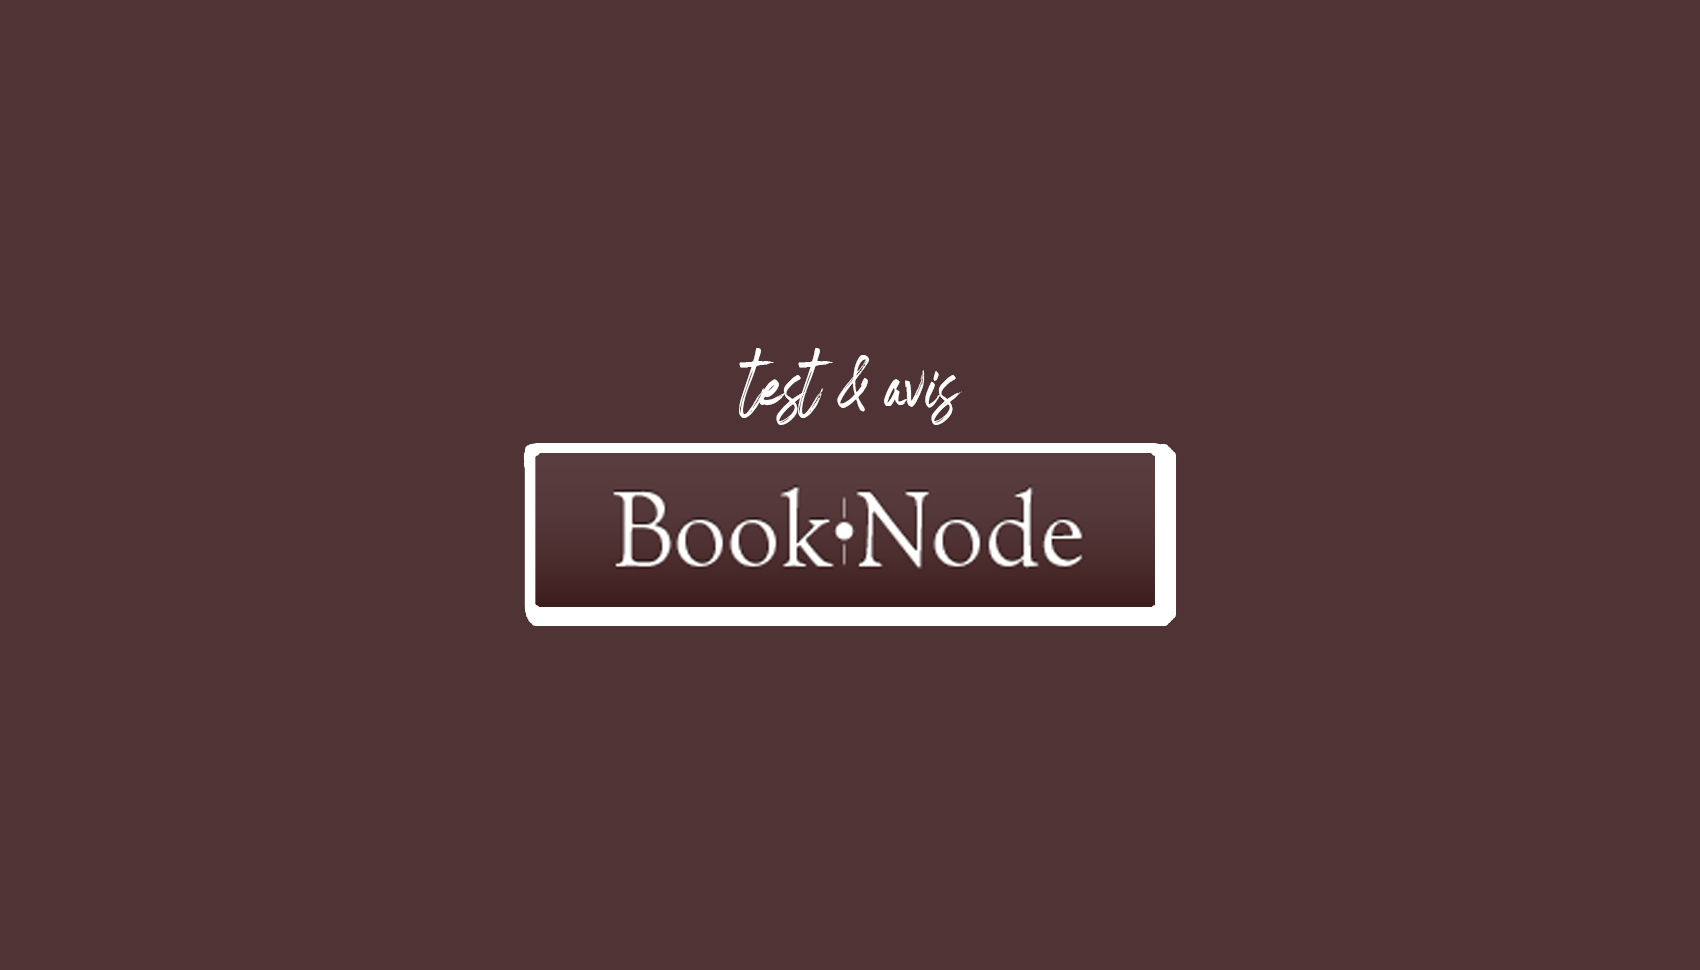 Booknode: ilmainen virtuaalikirjasto lukemisen ystäville (arvostelu ja testaus)